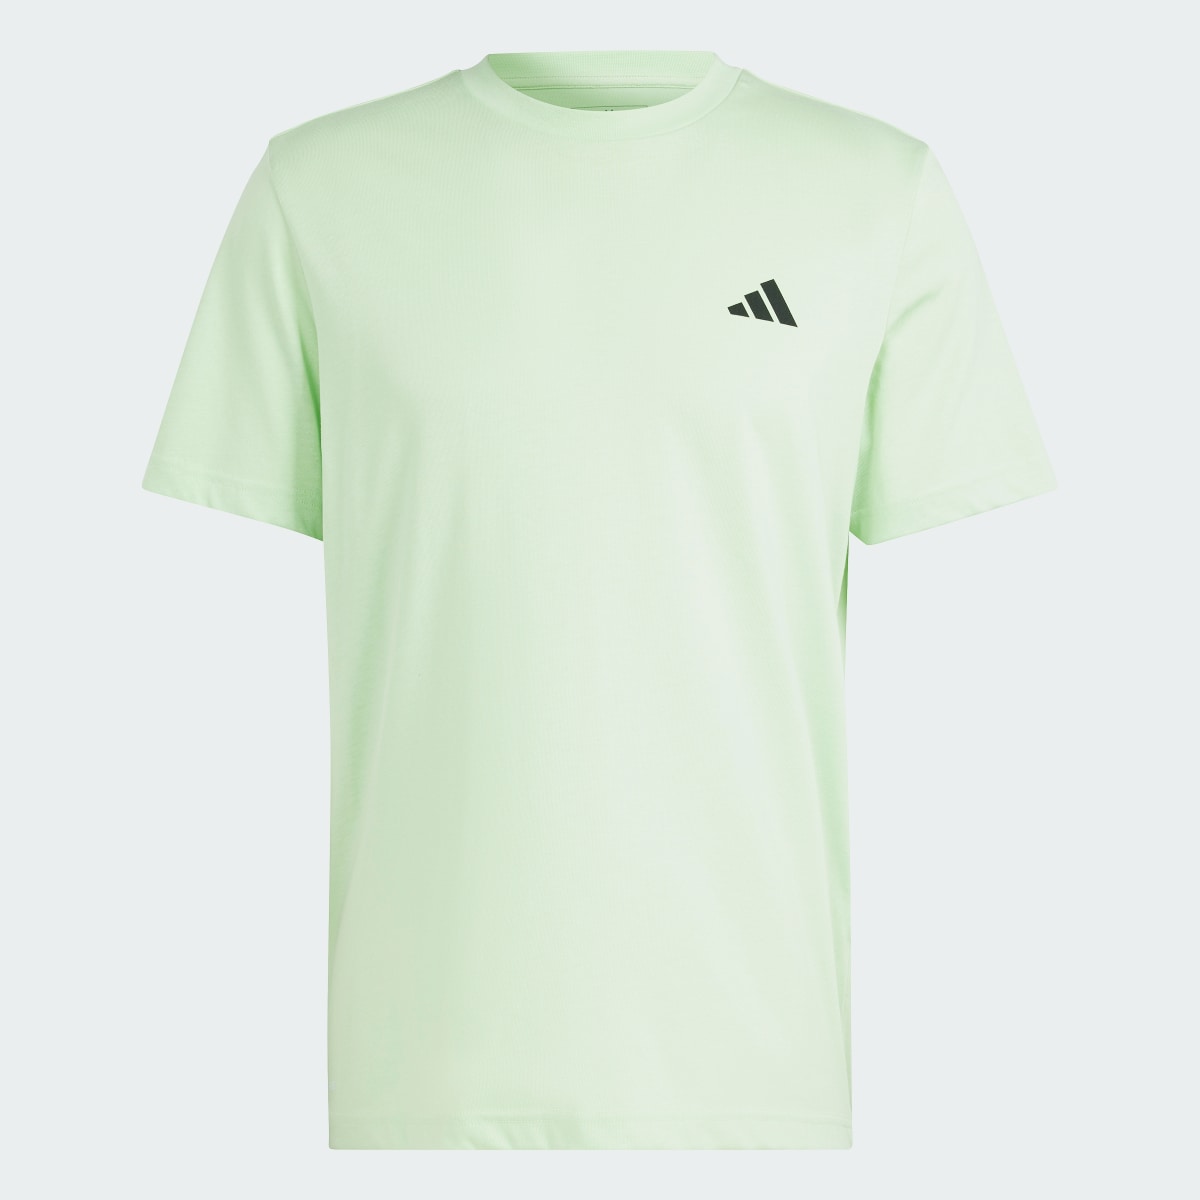 Adidas Running State Graphic T-Shirt. 5